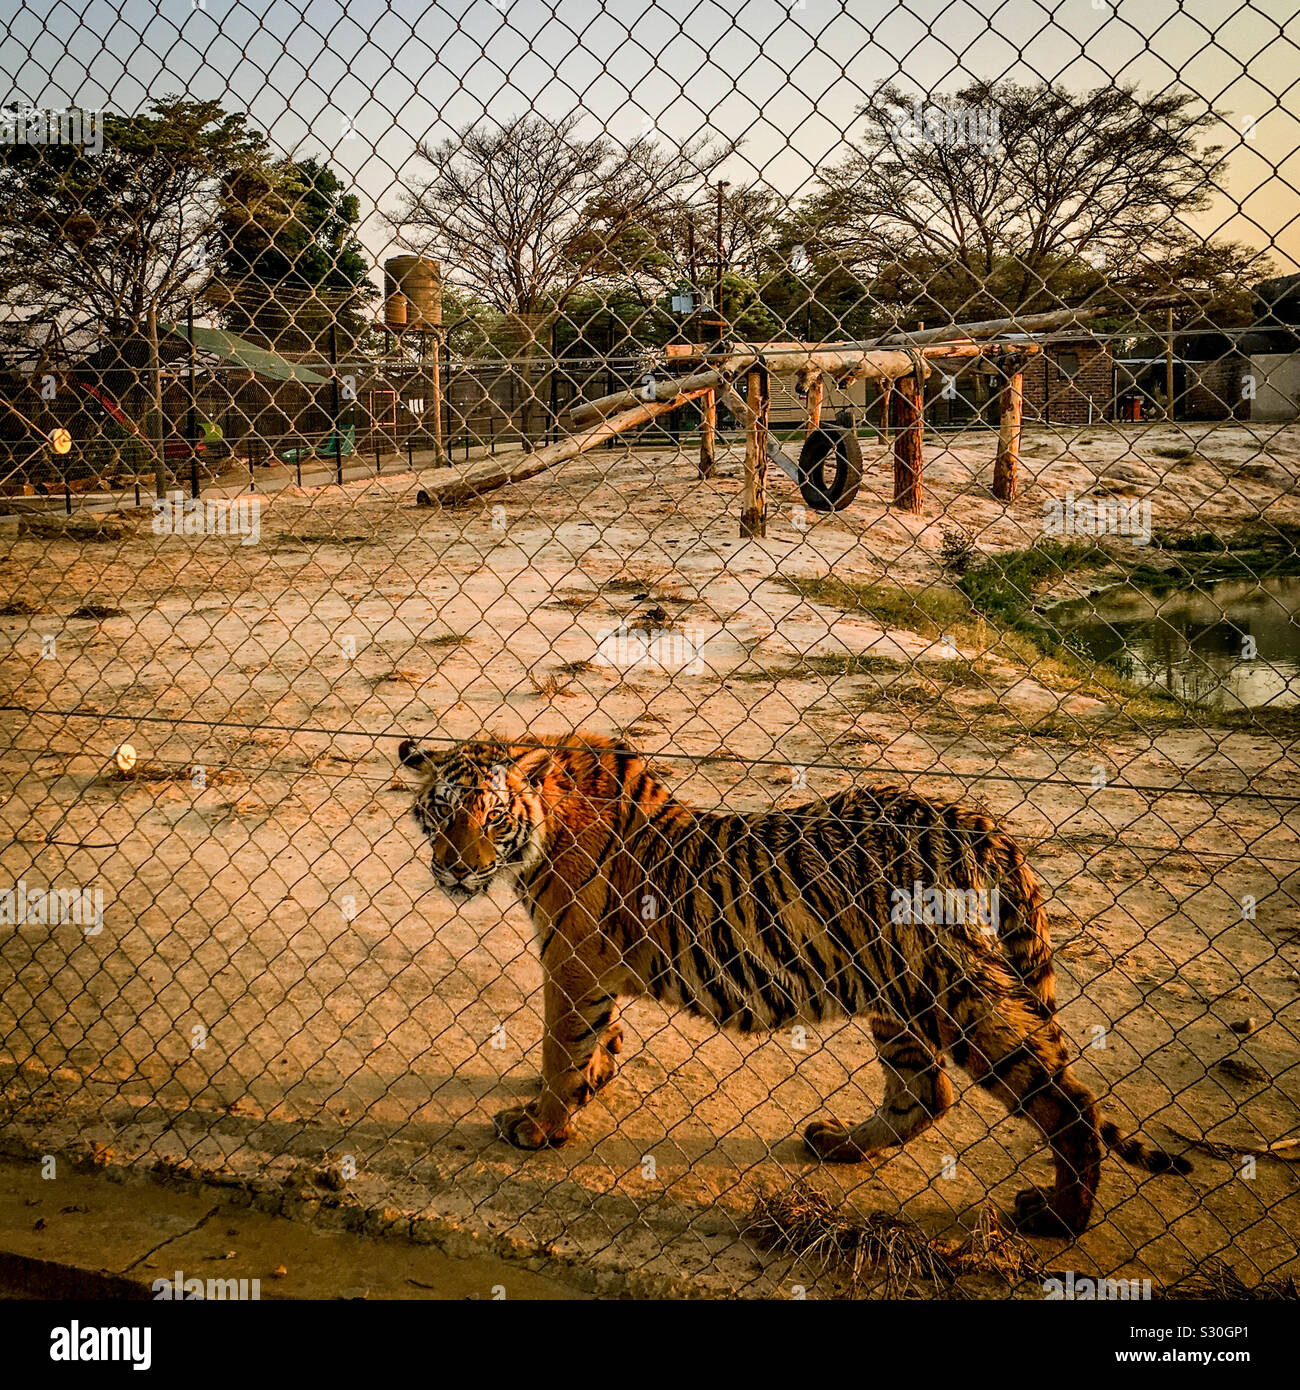 Tiger in big cat allevamento in cattività facility, Provincia di Limpopo, Sud Africa. Molti di questi grandi felini sono allevati per la caccia ai trofei o per la fornitura di "medicinale" le ossa in Asia. 2016. Foto Stock